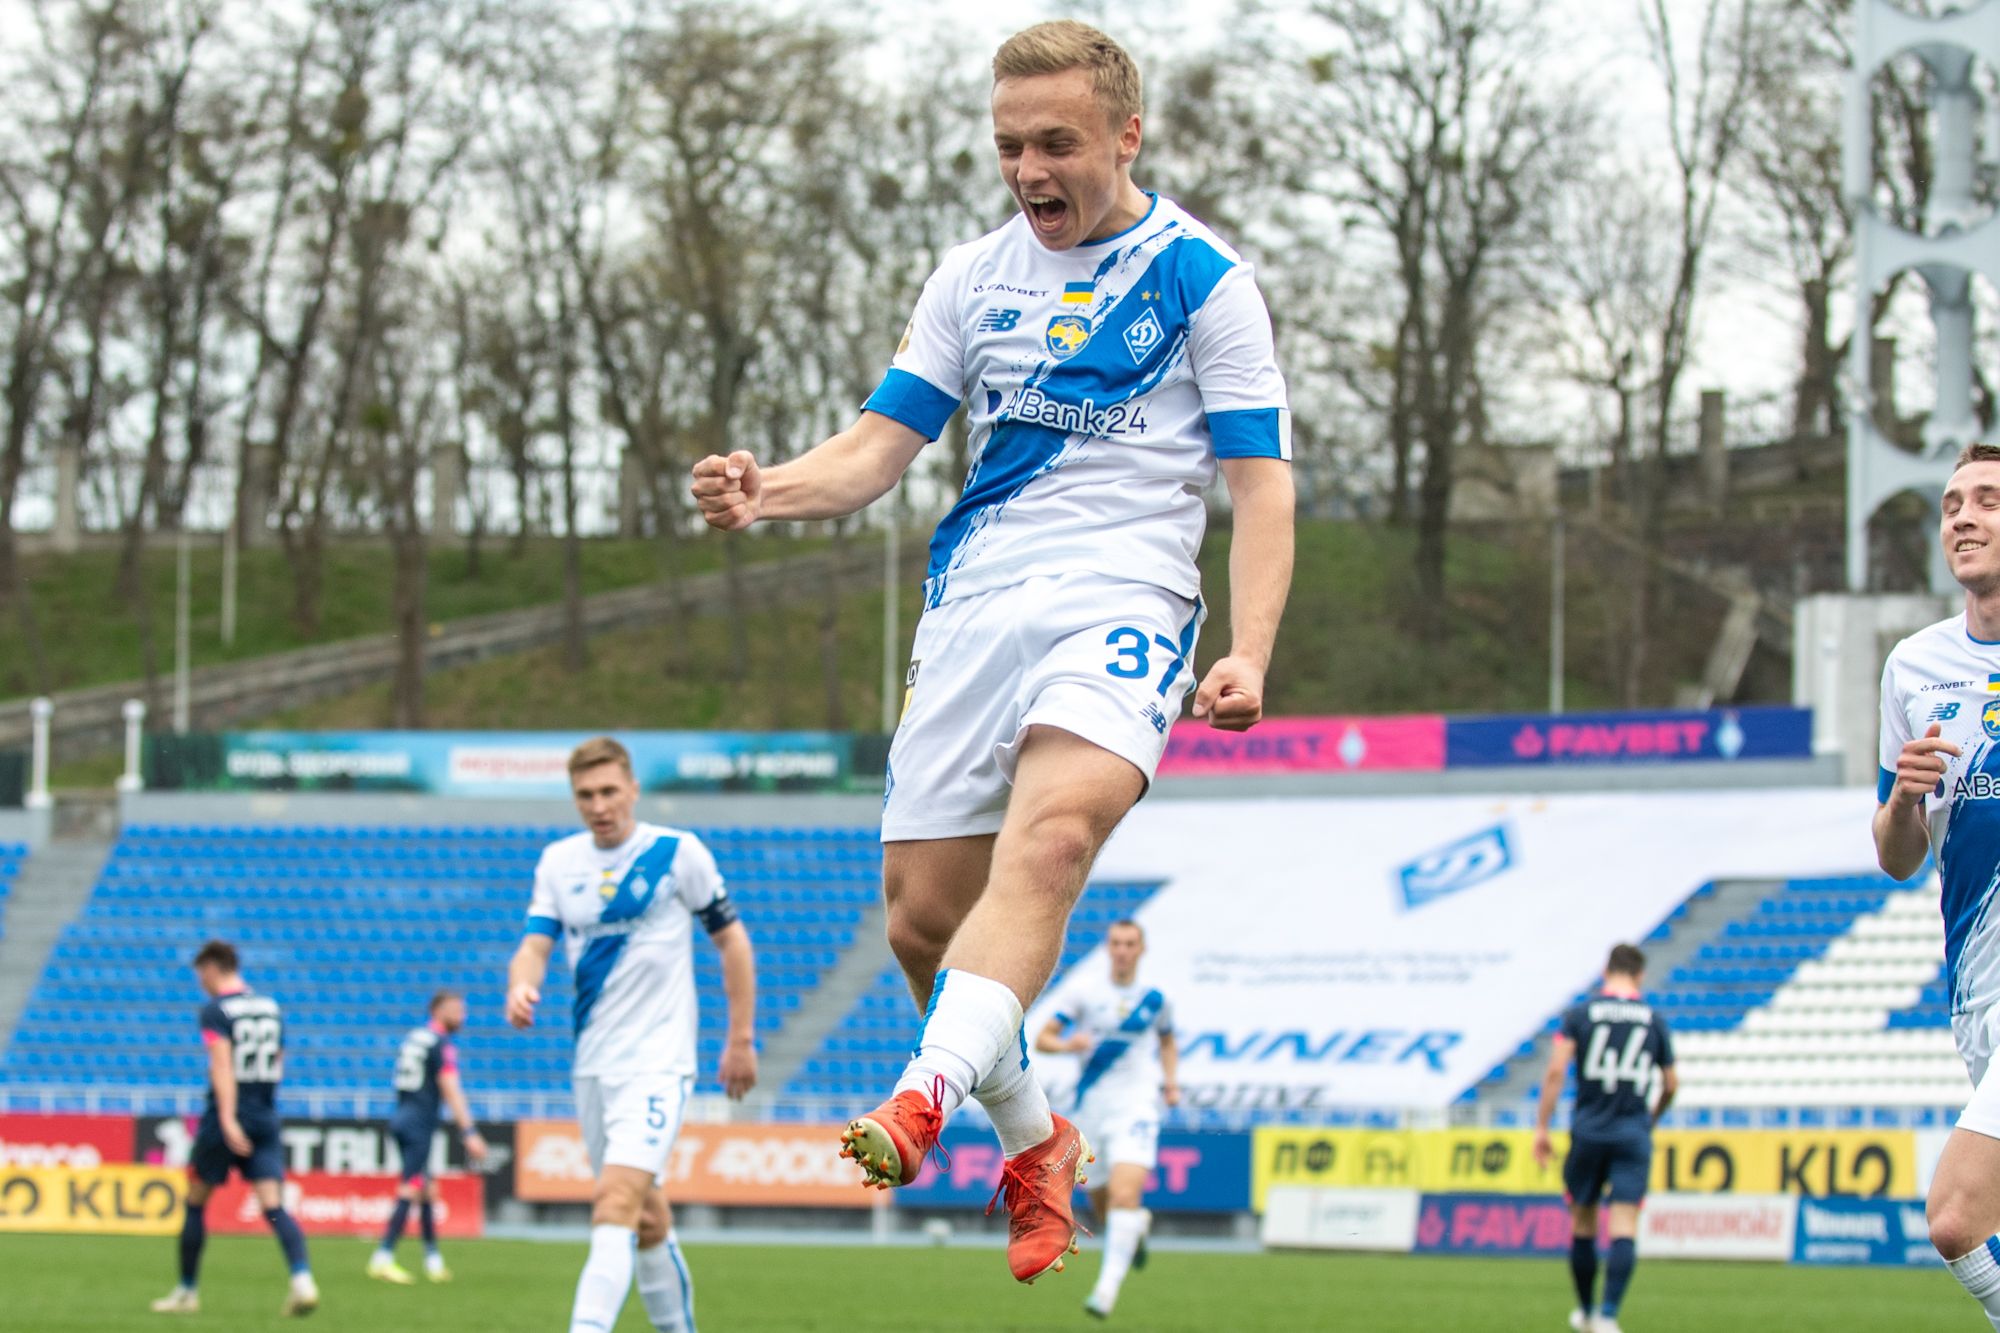 Debut goal of Anton Tsarenko for Dynamo